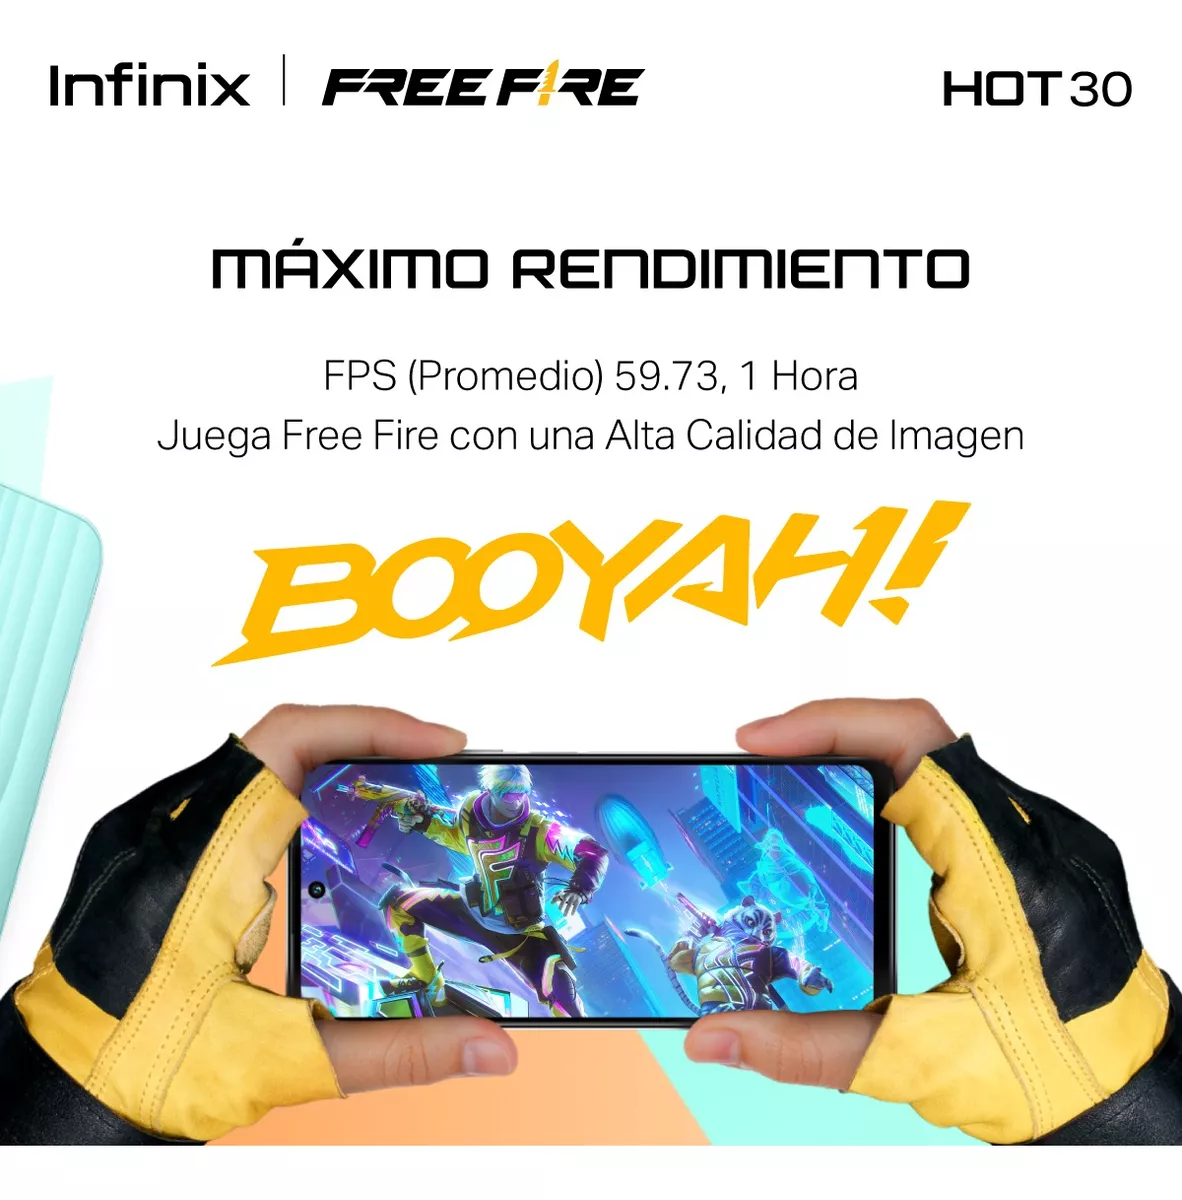 Celular Infinix Free Fire, novo, lacrado na caixa. - Celulares e